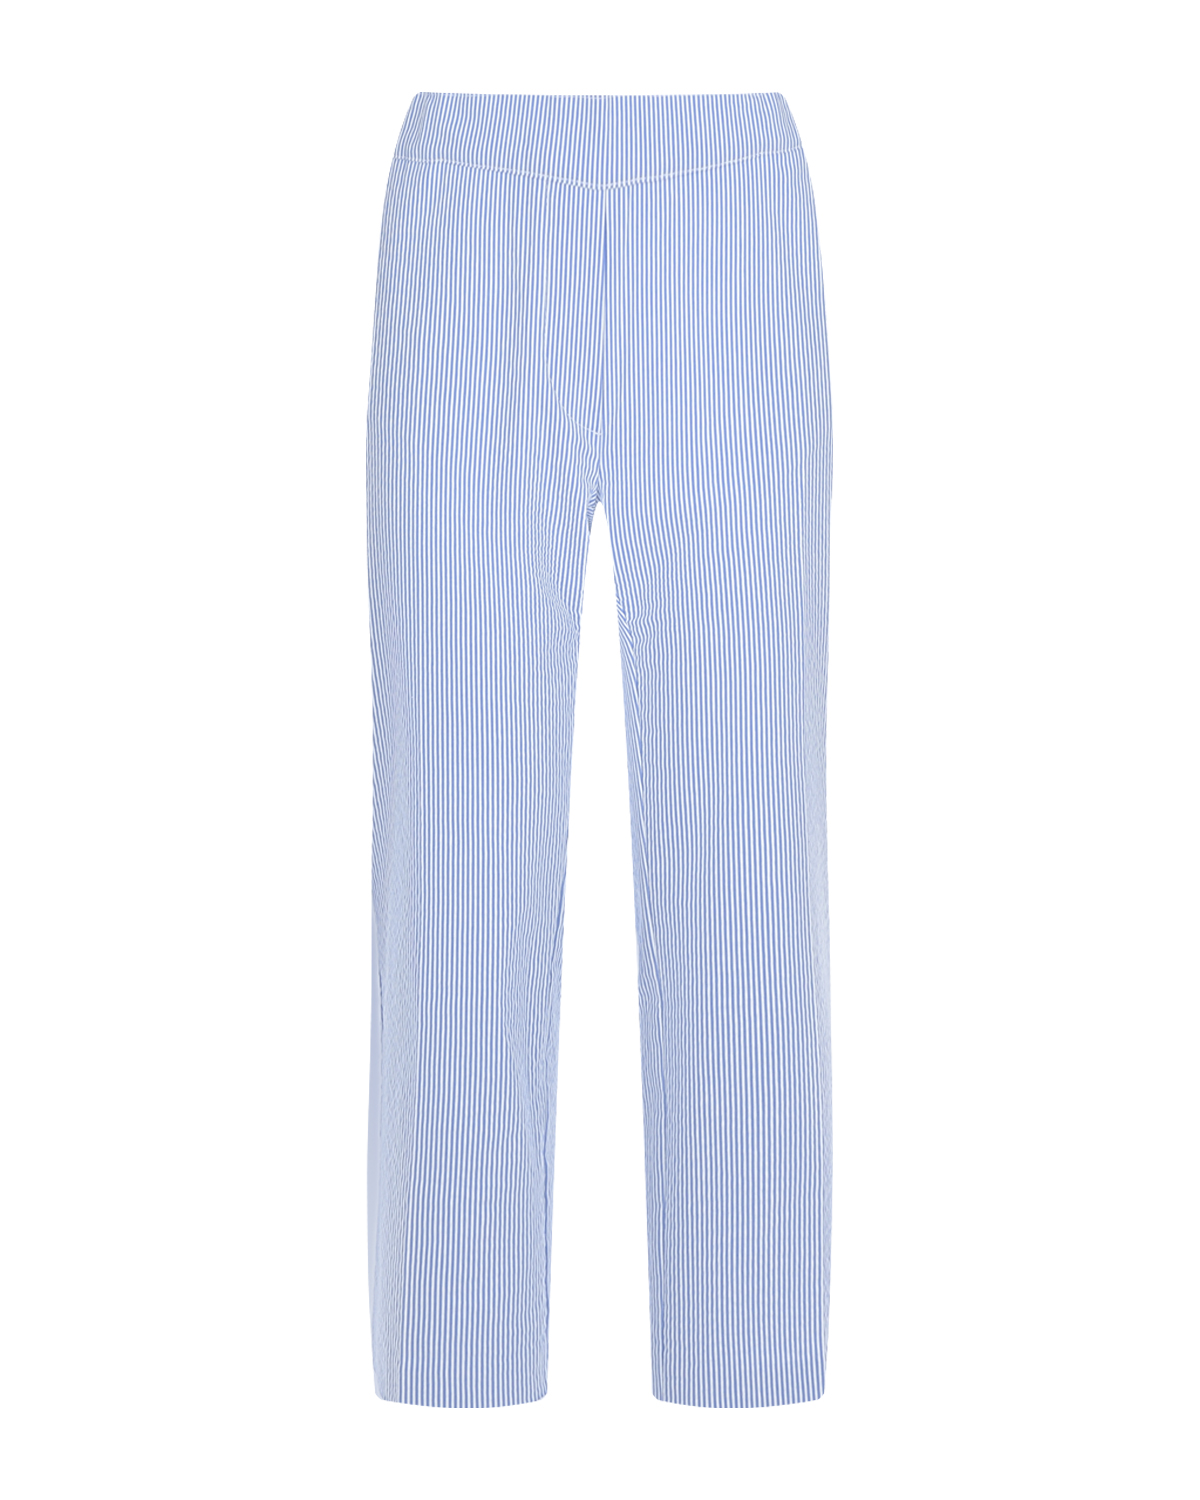 Голубые брюки в полоску для беременных Pietro Brunelli голубые брюки в полоску для беременных pietro brunelli